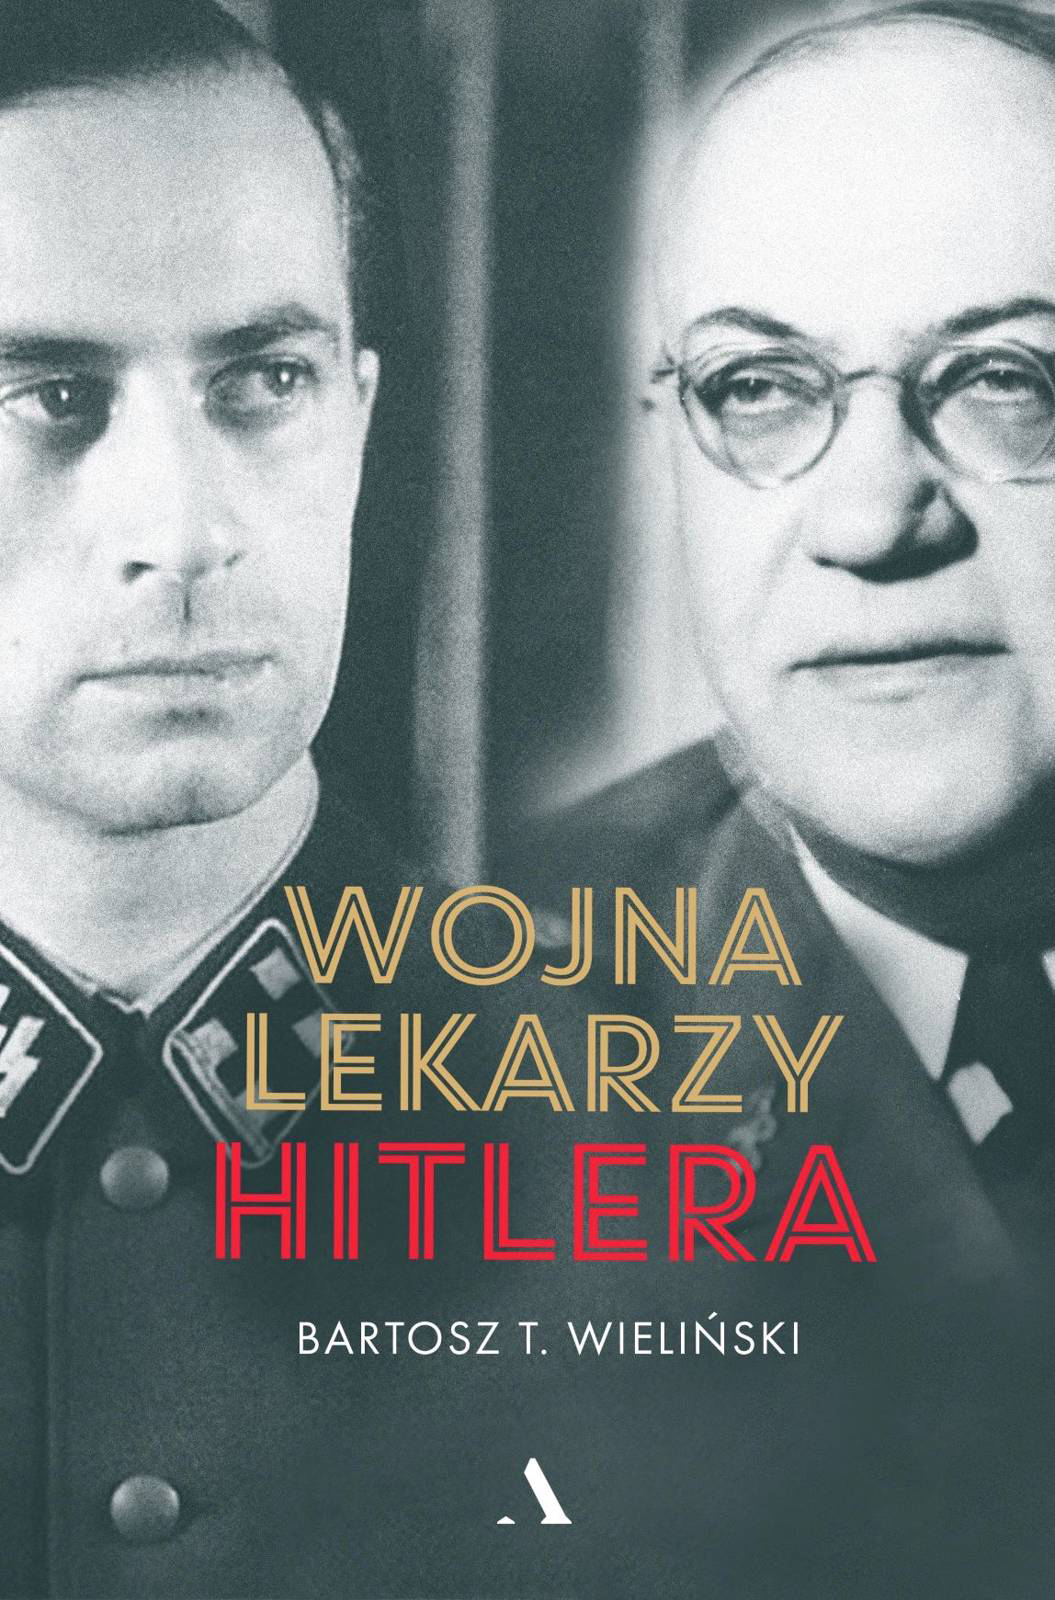 Wojna lekarzy Hitlera, Bartosz T. Wieliński, Agora